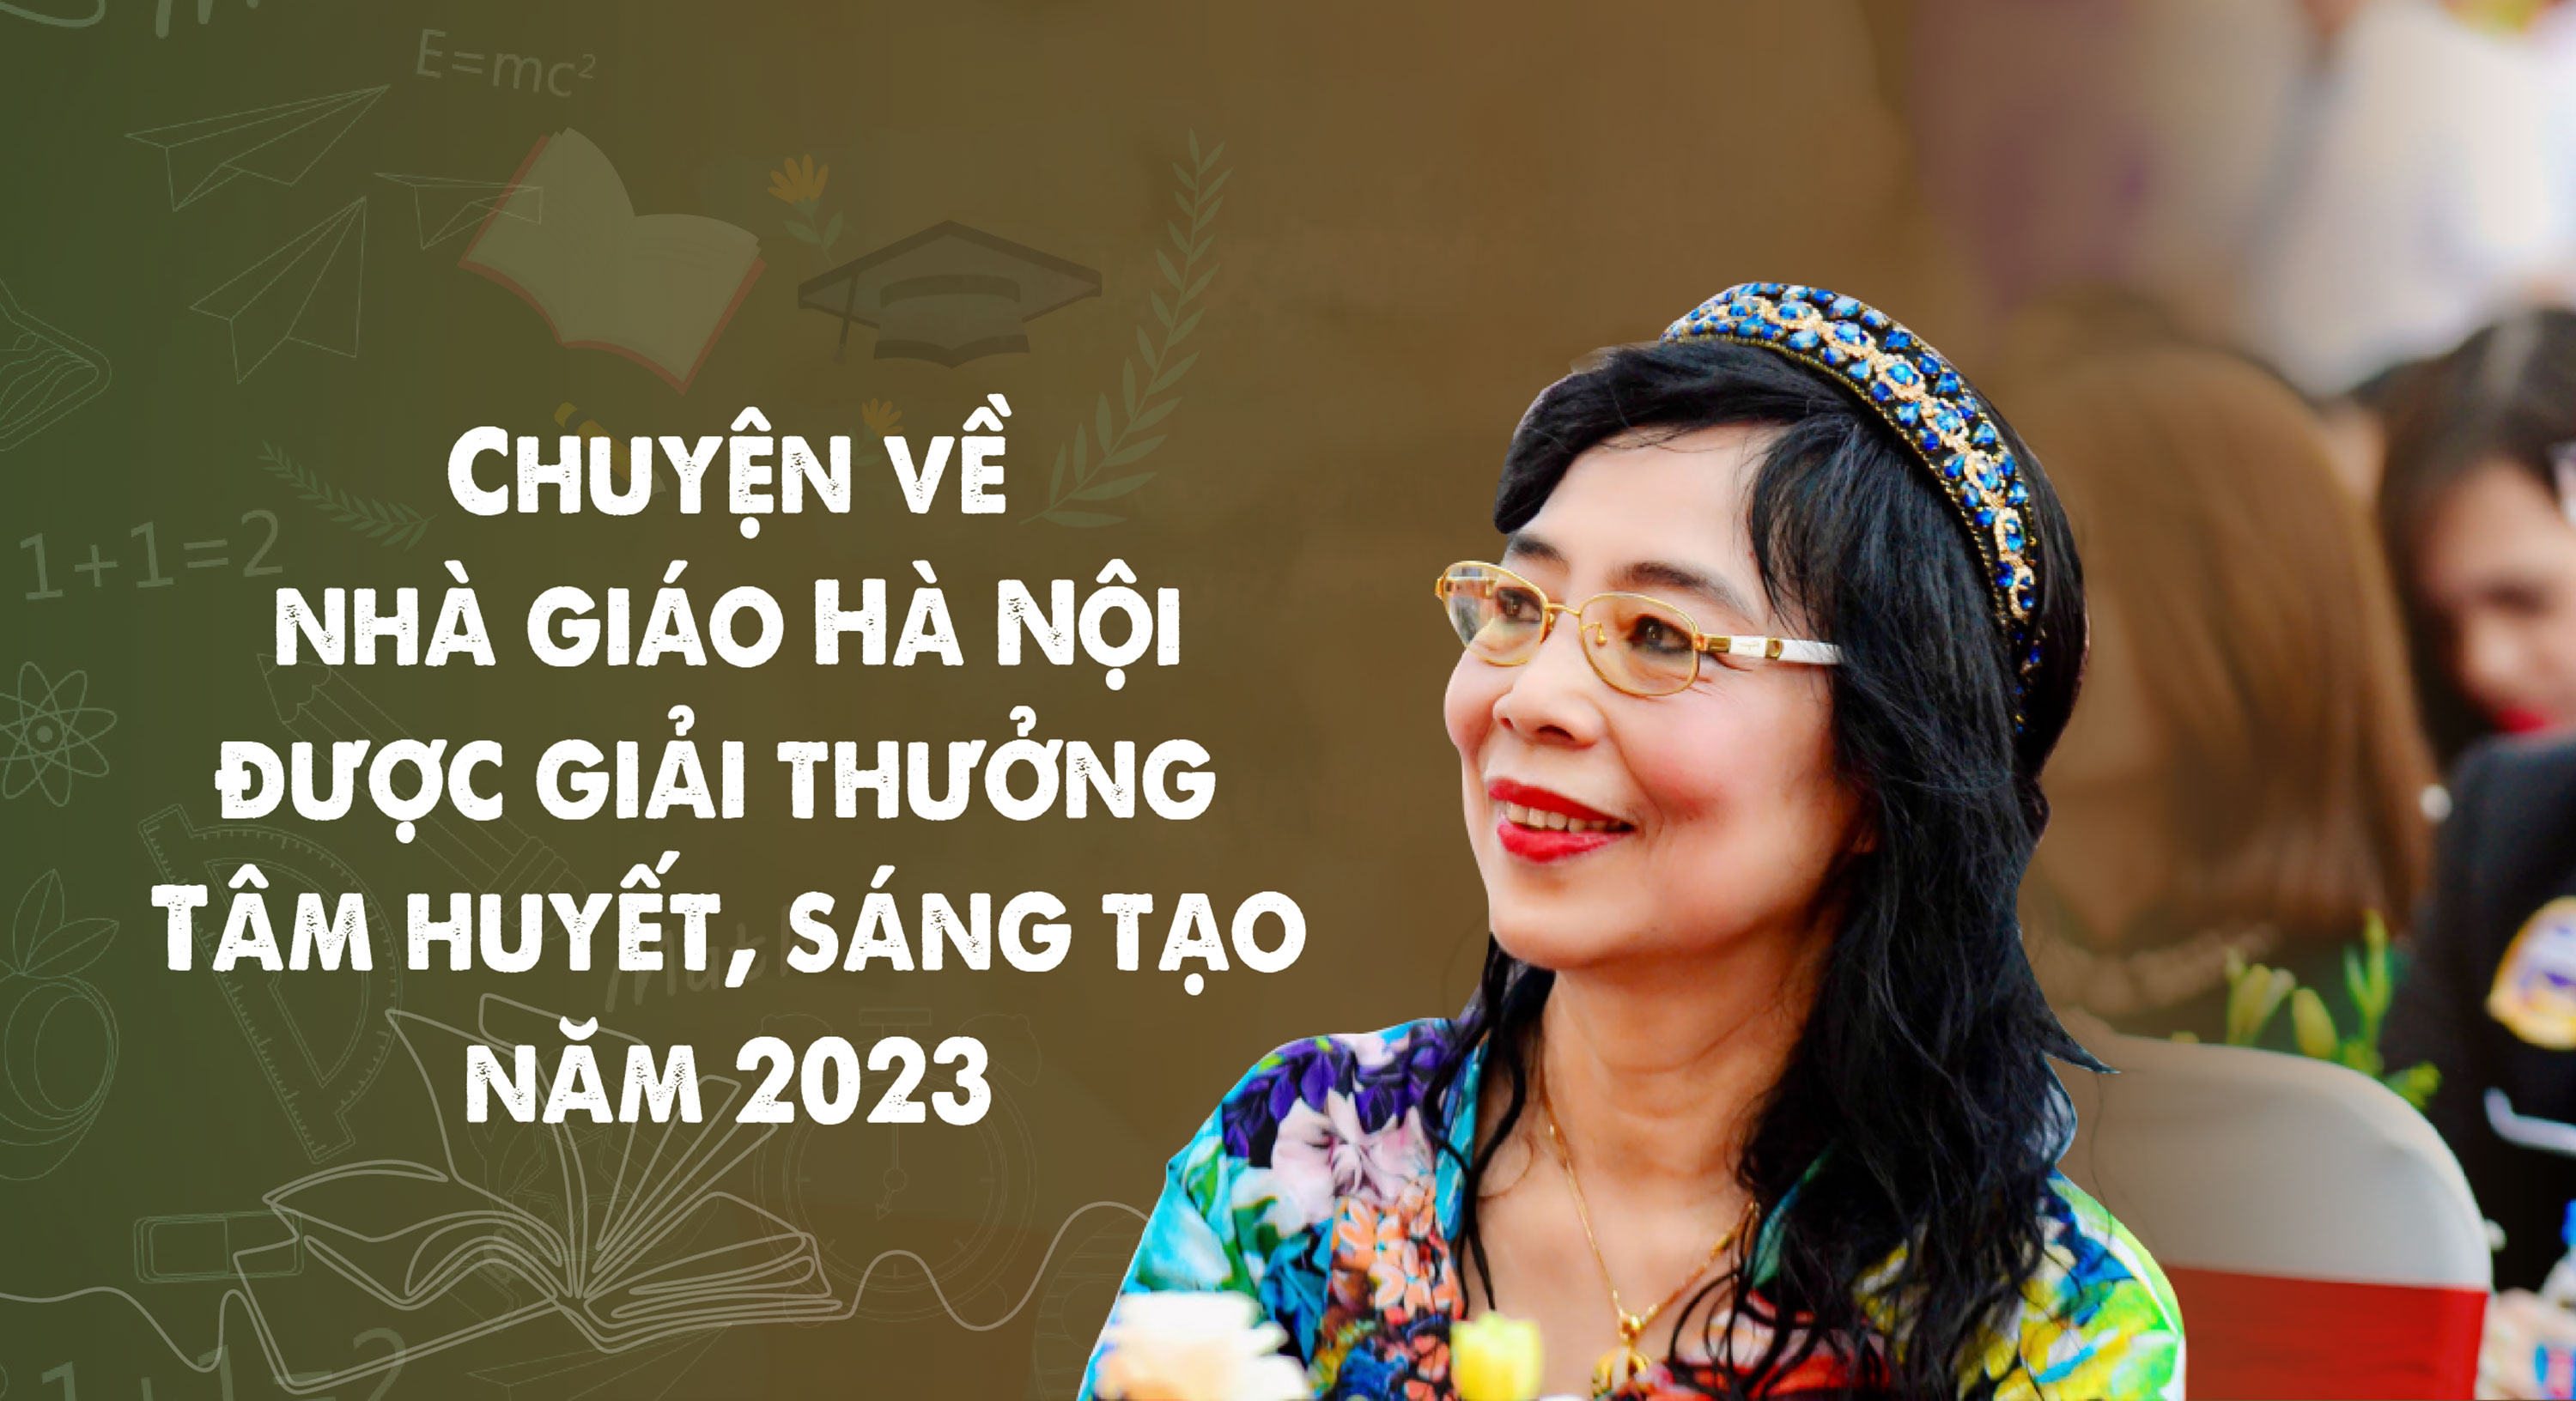 Chuyện về nhà giáo Hà Nội được giải thưởng Tâm huyết, sáng tạo năm 2023 - Ảnh 1